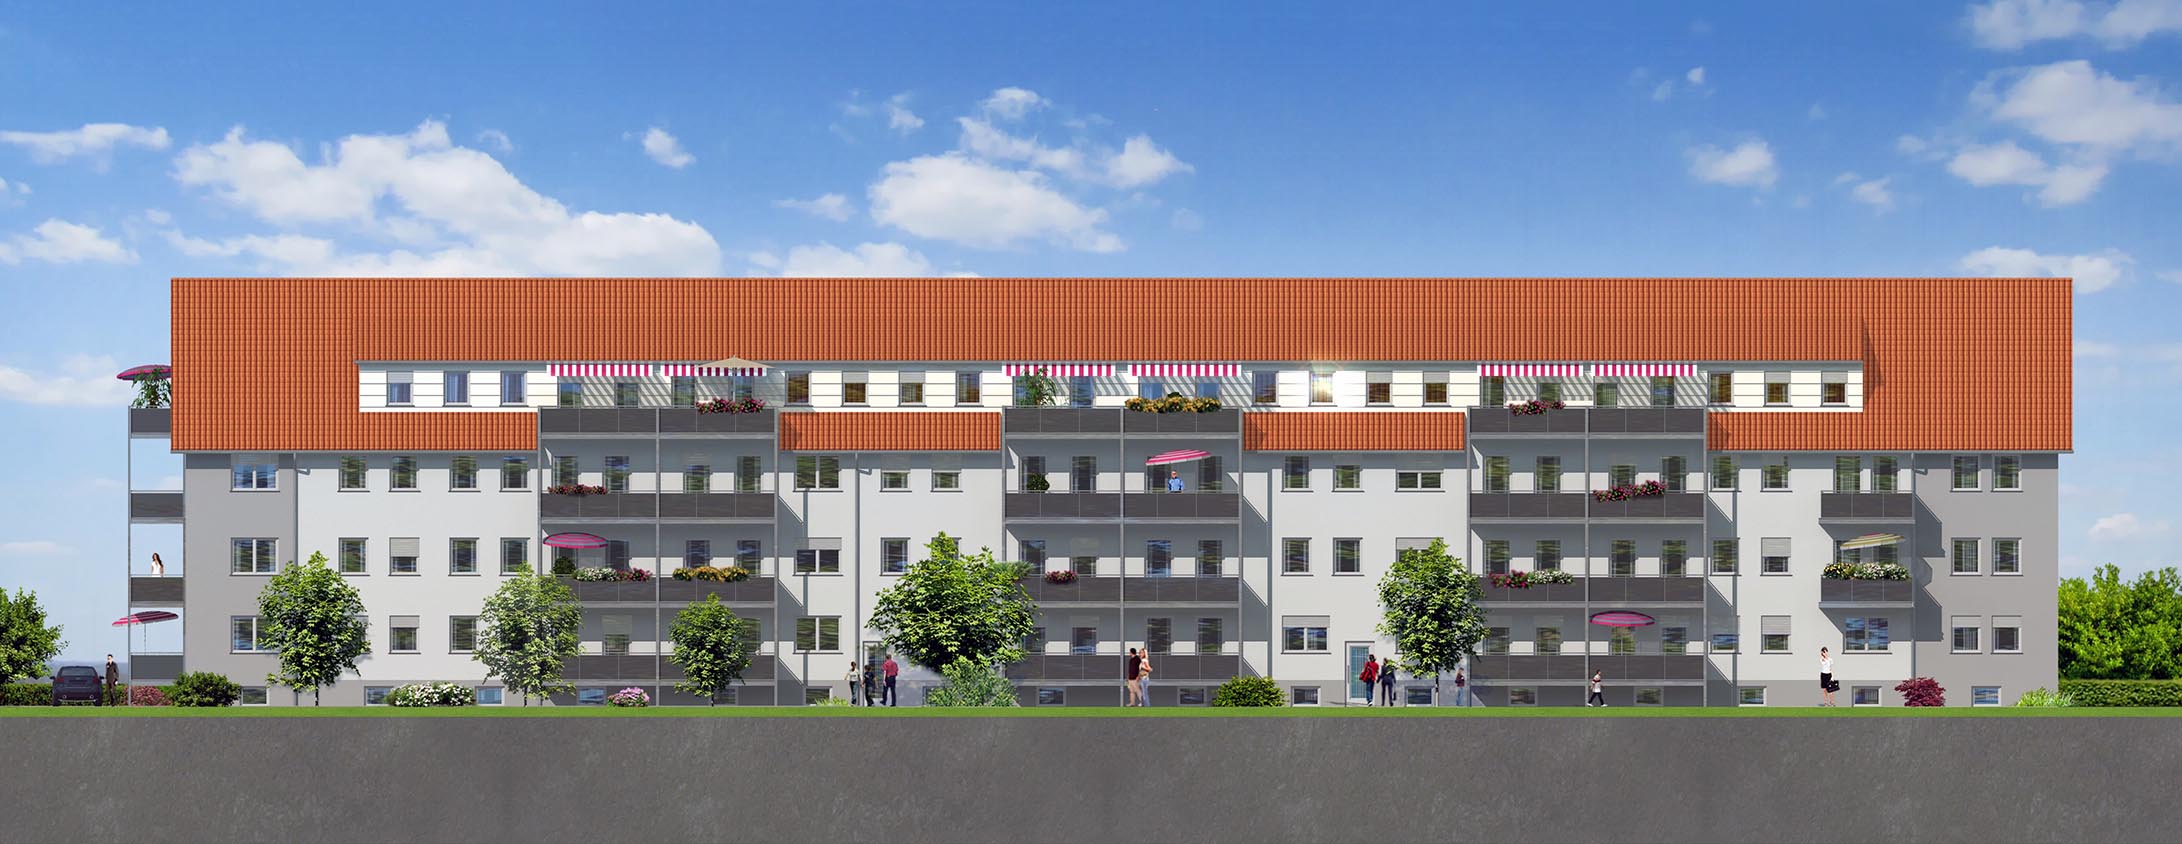 Architektur Visualisierung der frontal-Ansicht der Südfassade des Mehrfamilienhaus-Neubaus in Uferstraße 16, 73084 Salach, visualisiert für ORYX WERBEAGENTUR aus Göppingen (Jahr 2012)